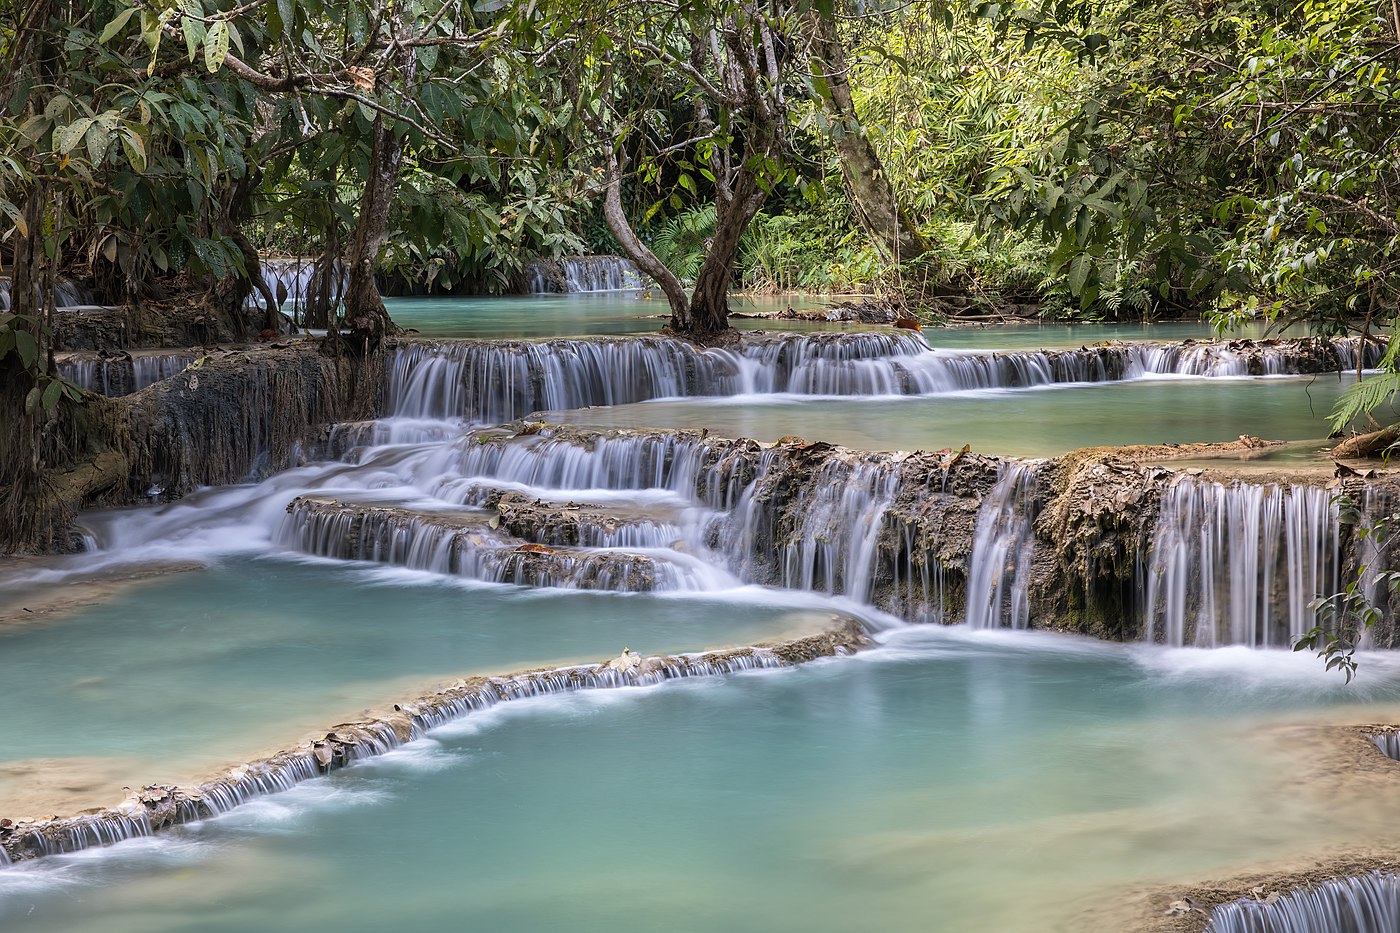 Kuang Si Falls and its emerald water pools